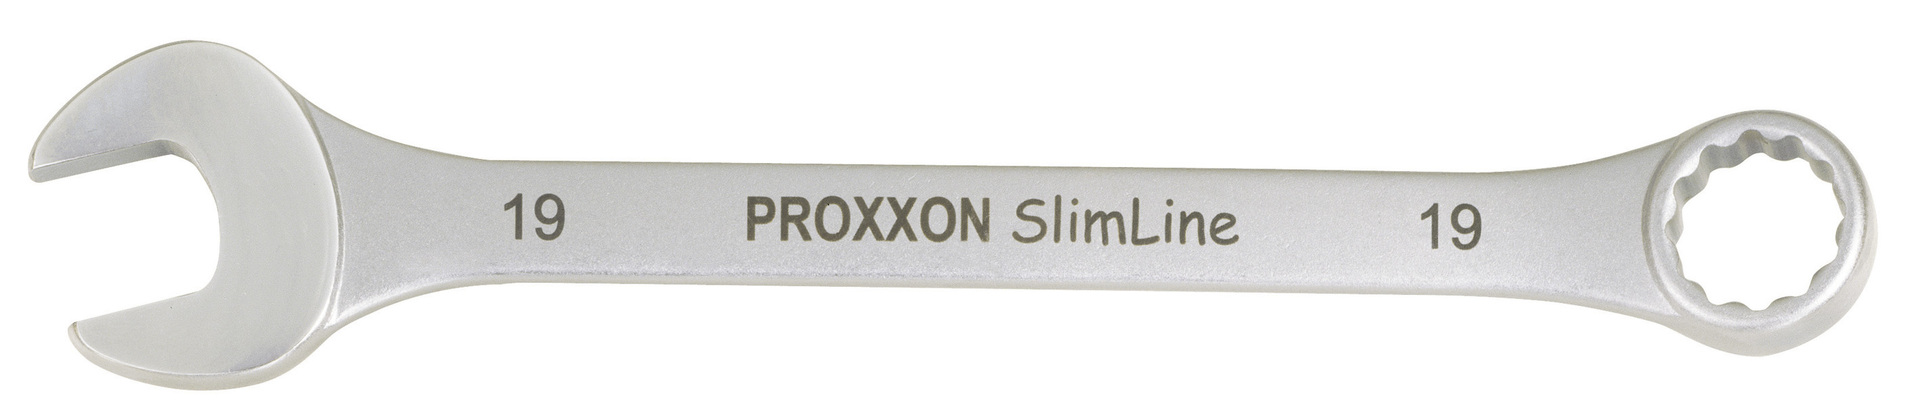 PROXXON GmbH Hx Pocketschlüsselsatz